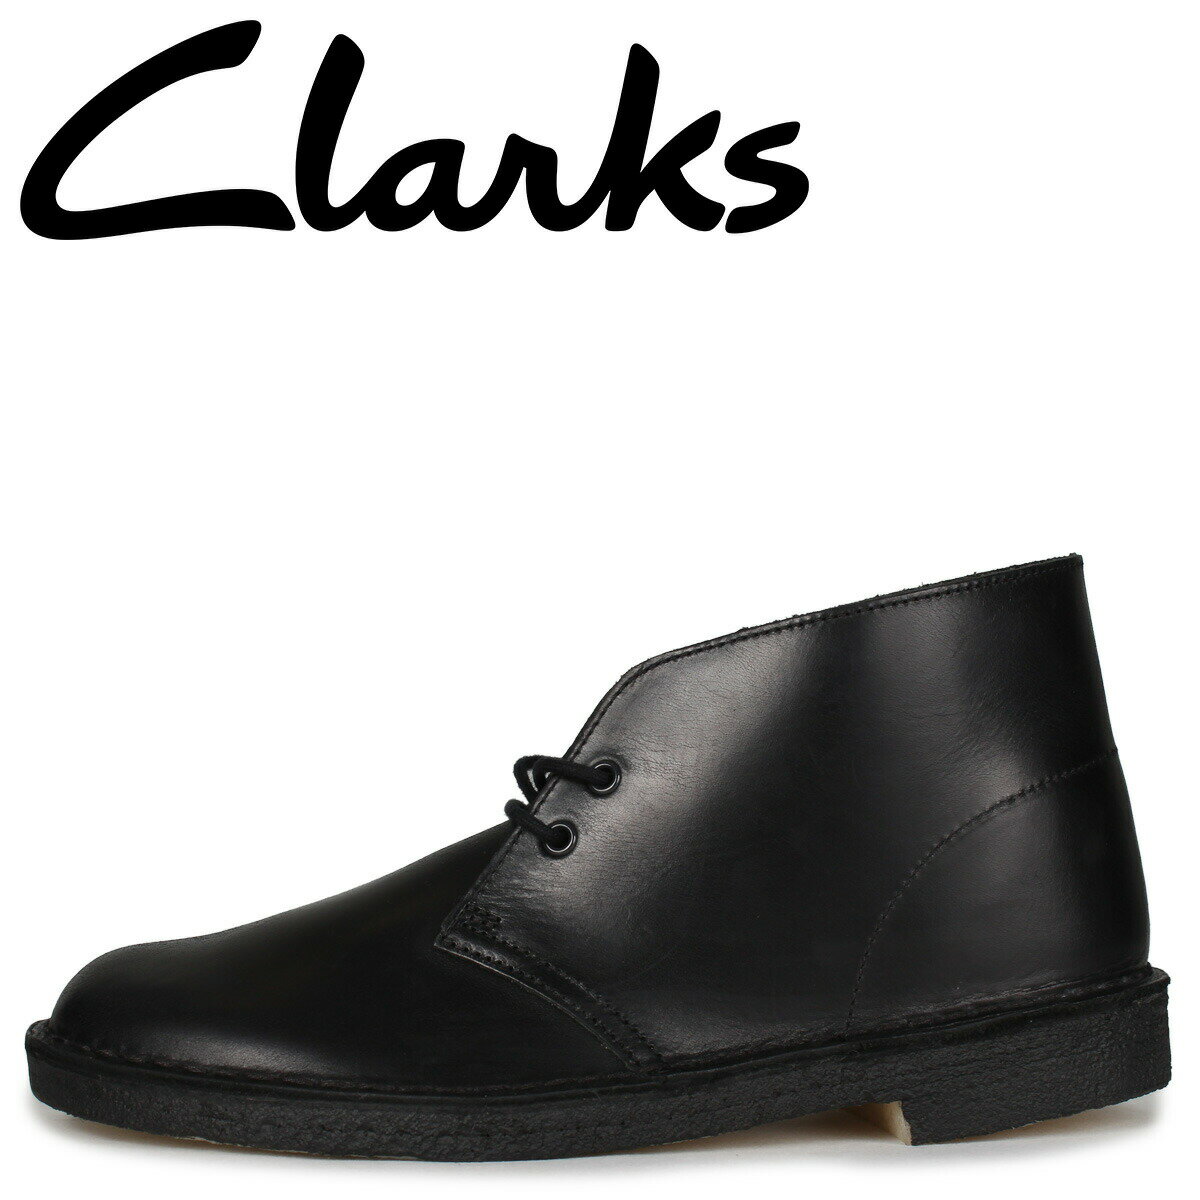 Clarks DESERT BOOT クラークス デザートブーツ メンズ ブラック 黒 26155483